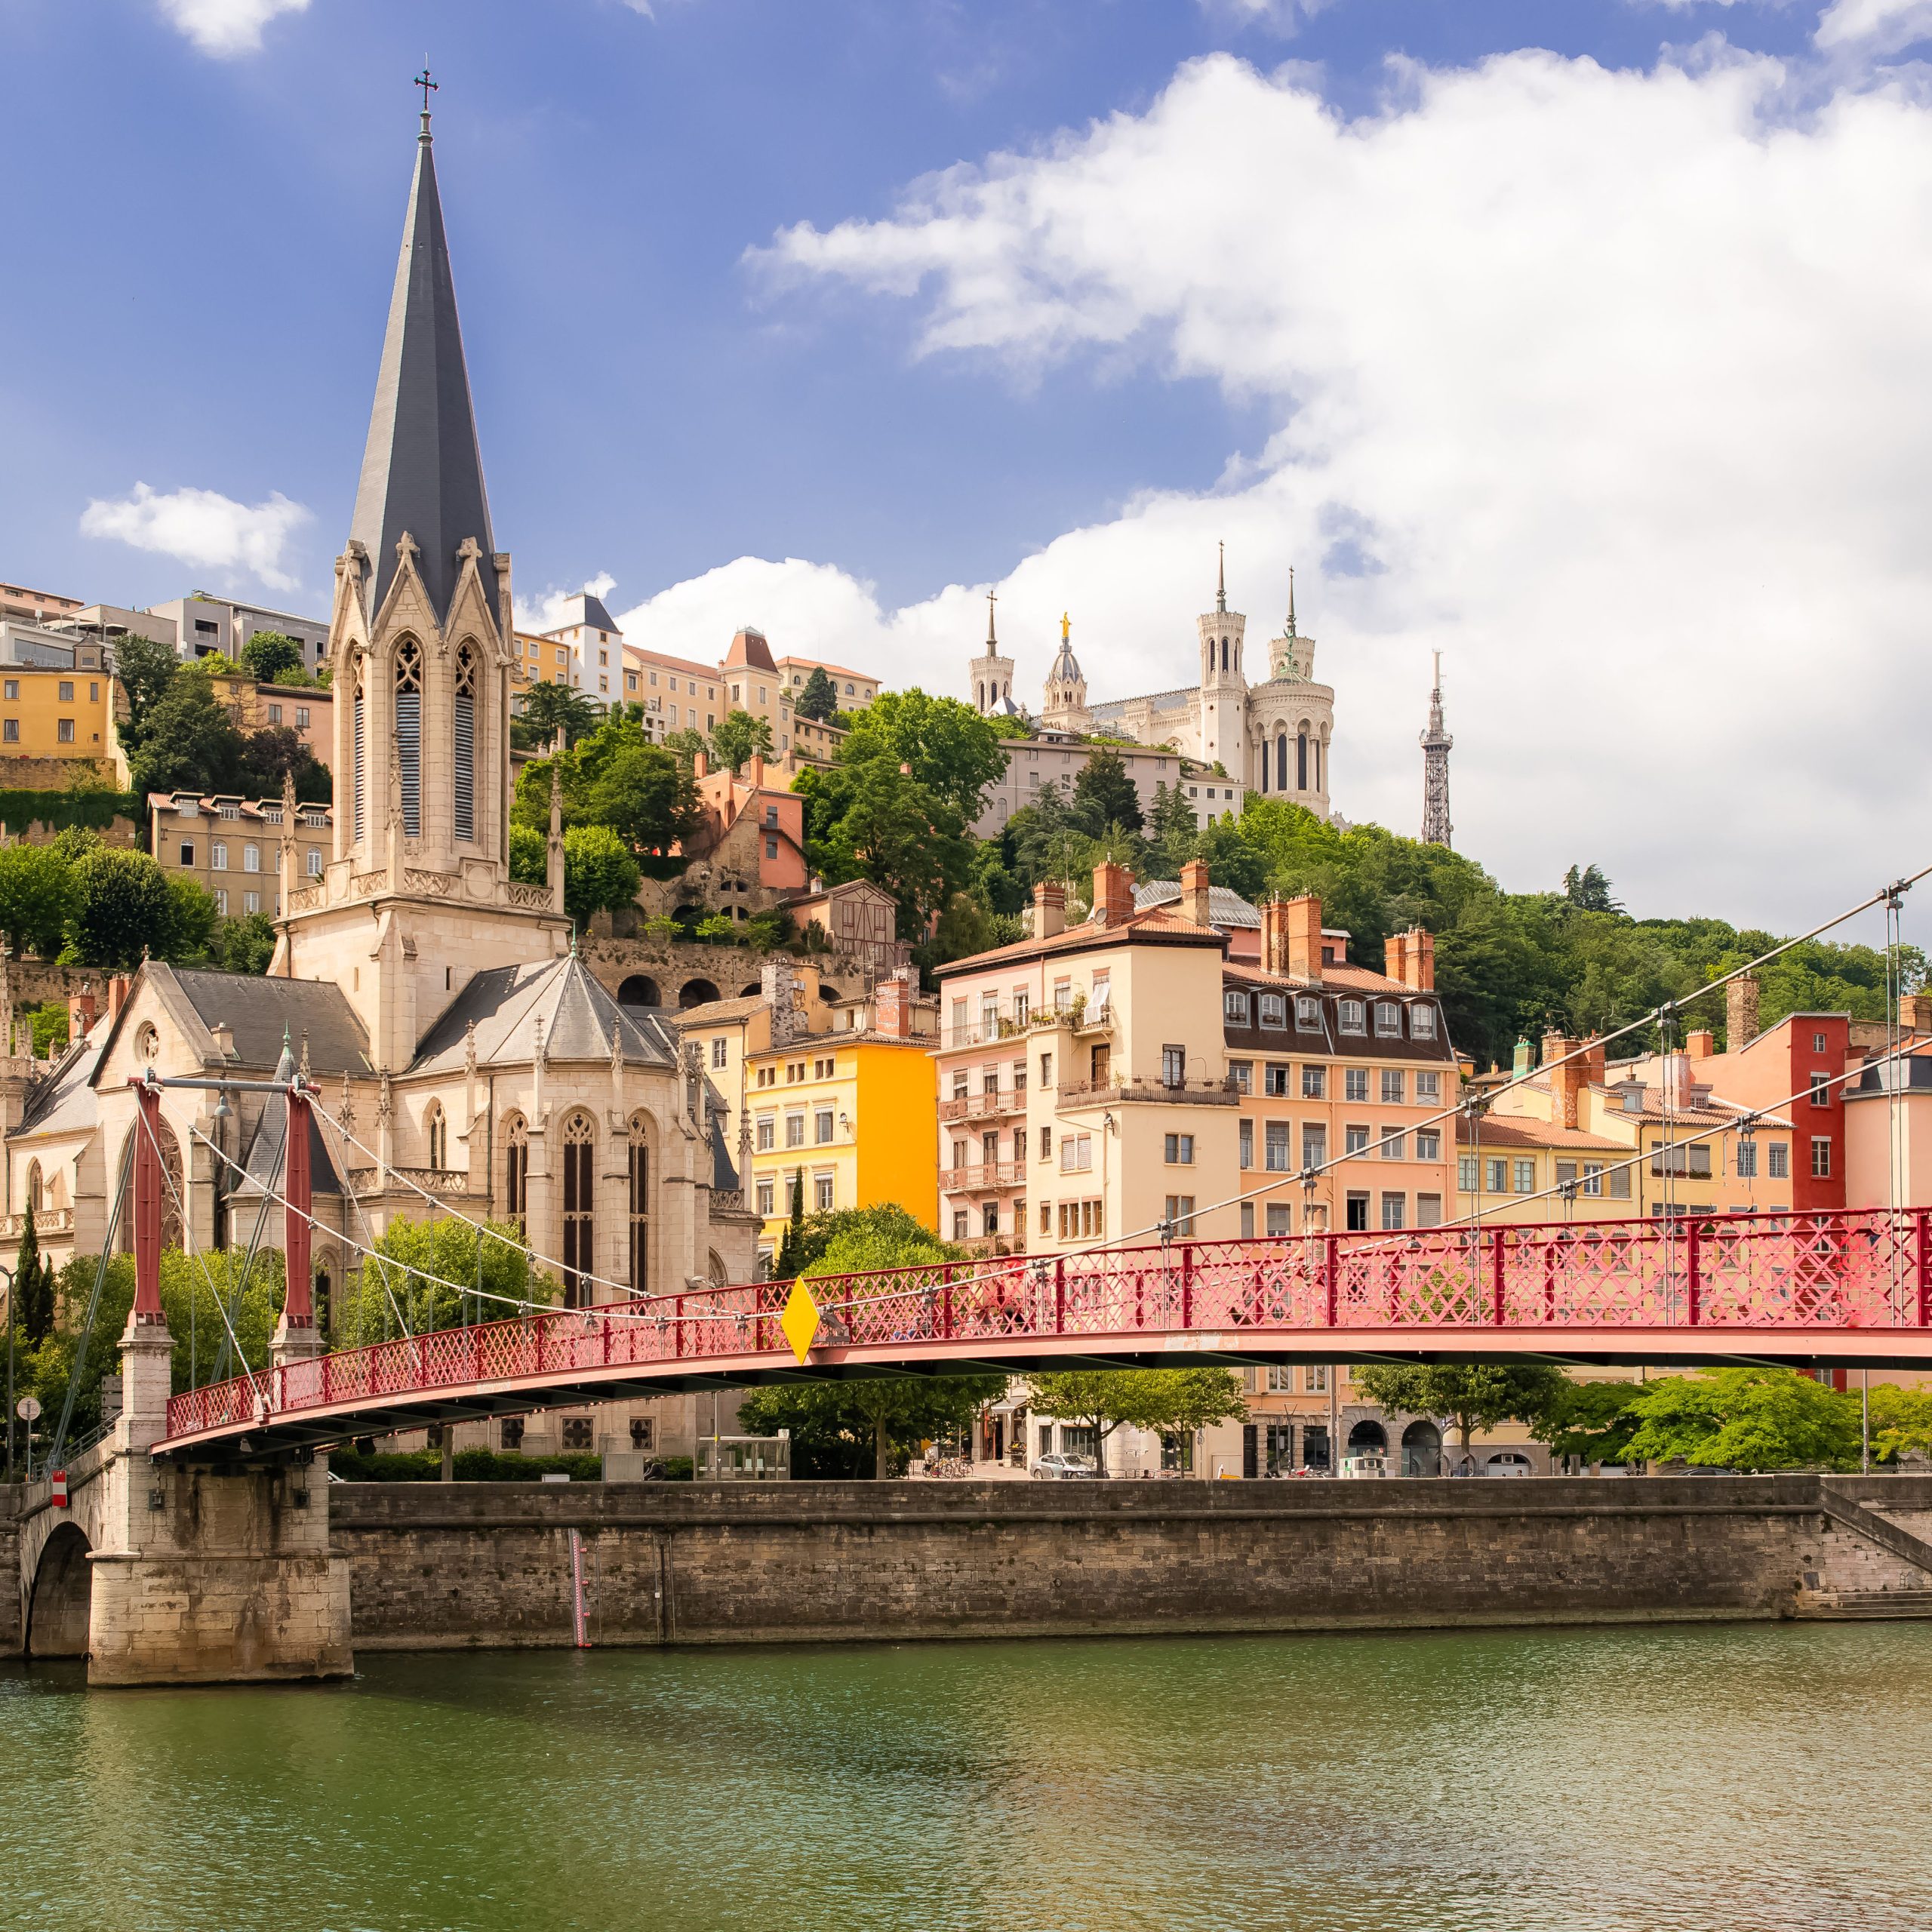 Objevte kouzlo Lyonu: Úžasný výlet s letenkou za 1384 Kč